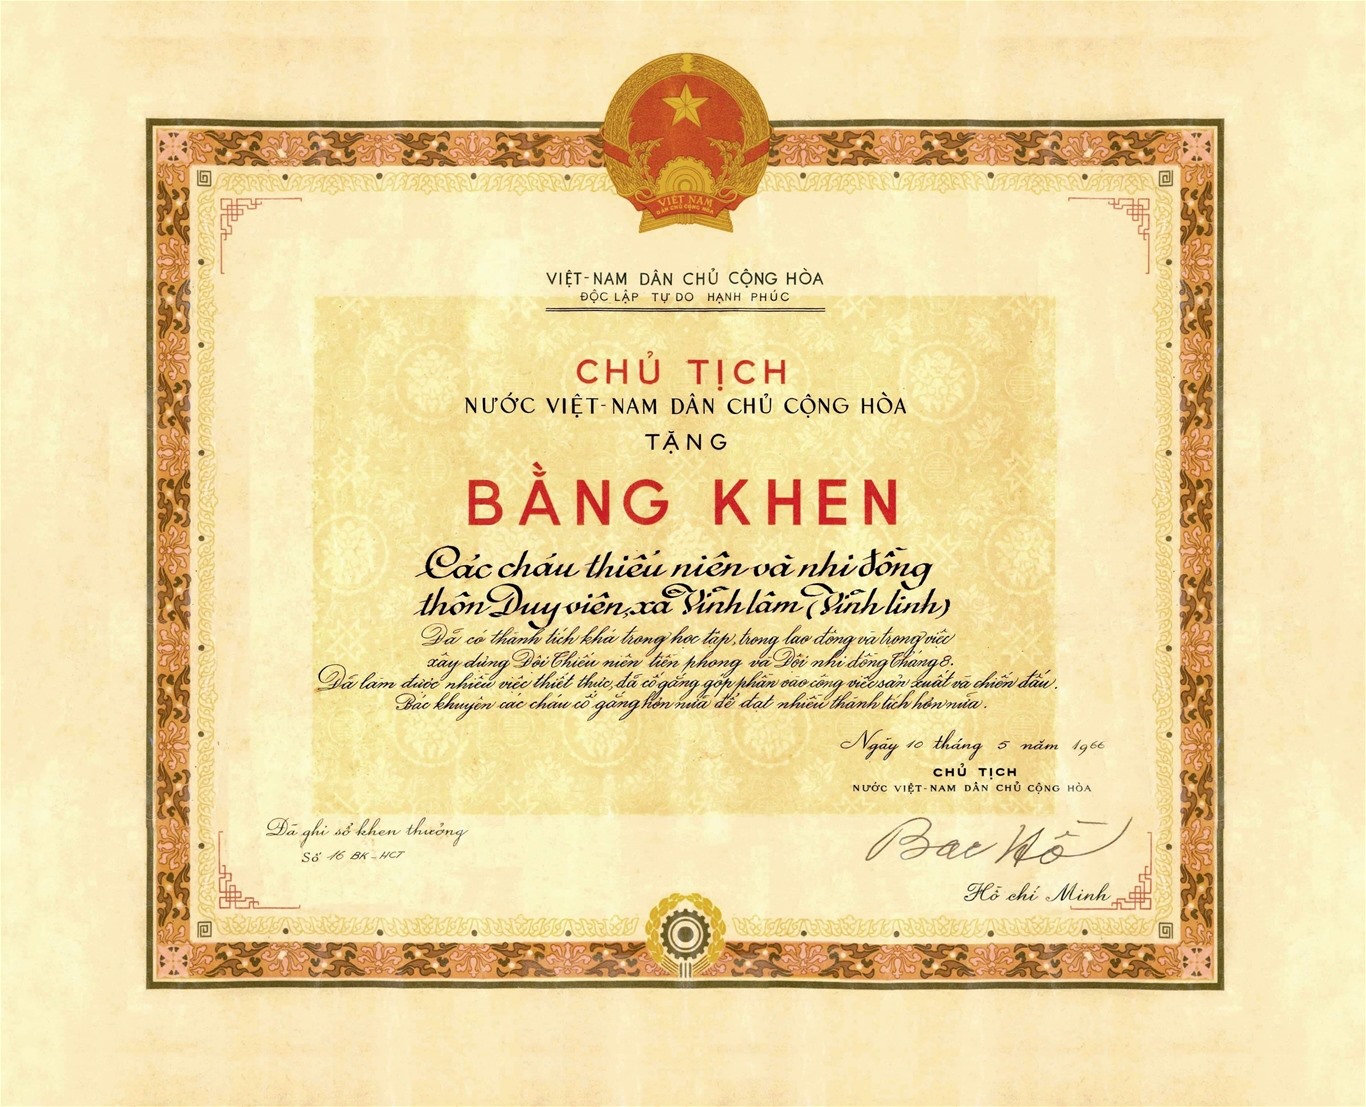 Bằng khen Chủ tịch Hồ Chí Minh tặng các cháu thiếu niên và nhi đồng thôn Duy Viên, xã Vĩnh Lâm, huyện Vĩnh Linh, tỉnh Quảng Trị, ngày 10/5/1966. Ảnh: BTHCM